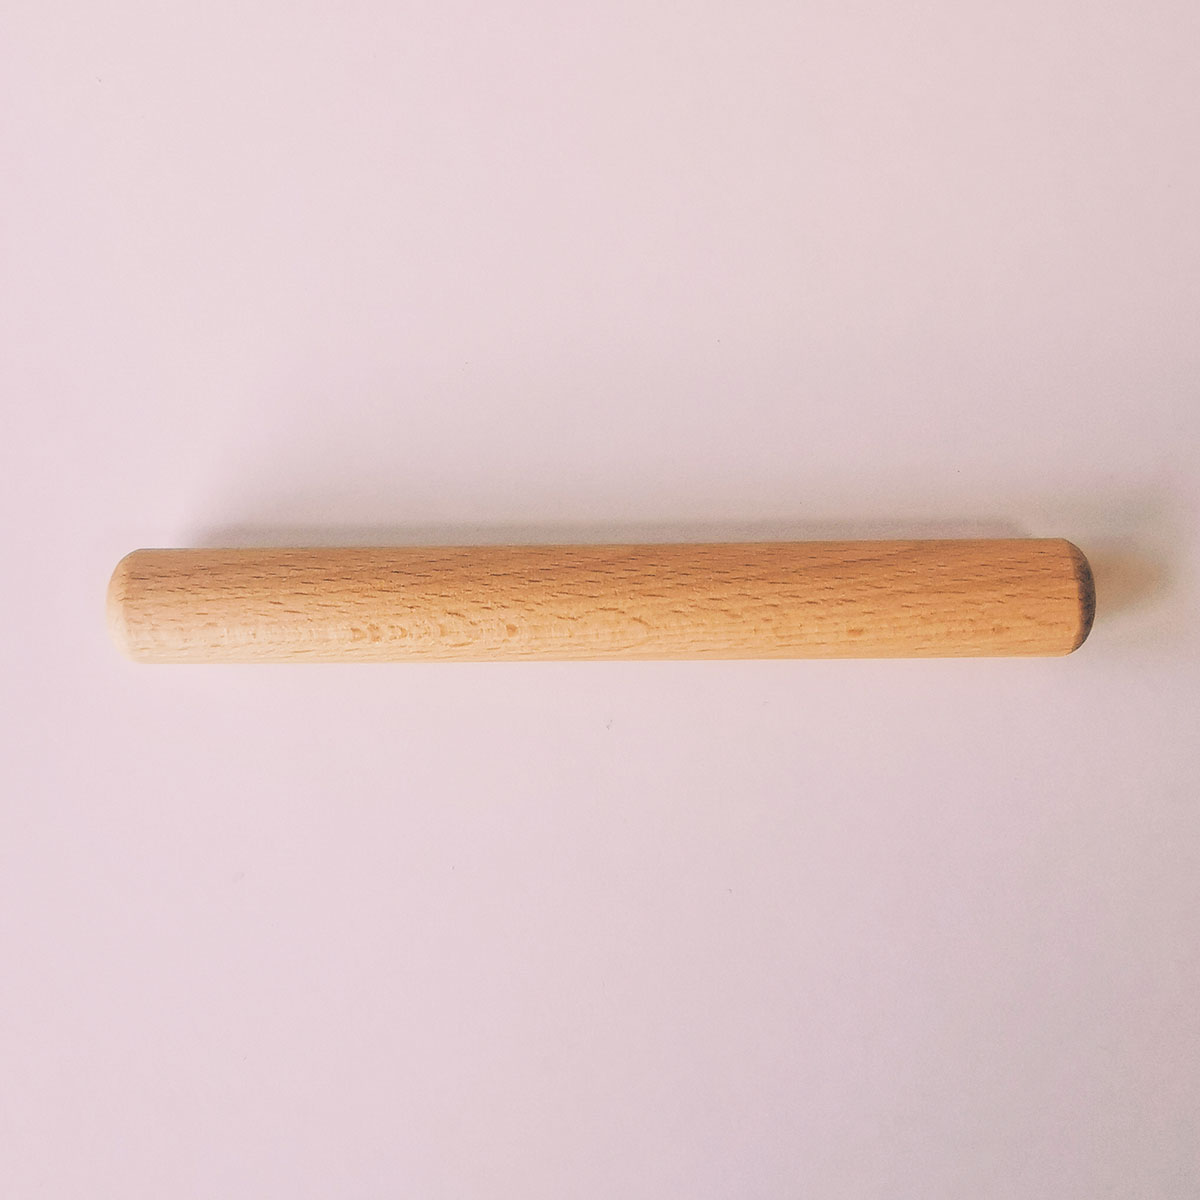 Rouleau en bois pour pâte à modeler